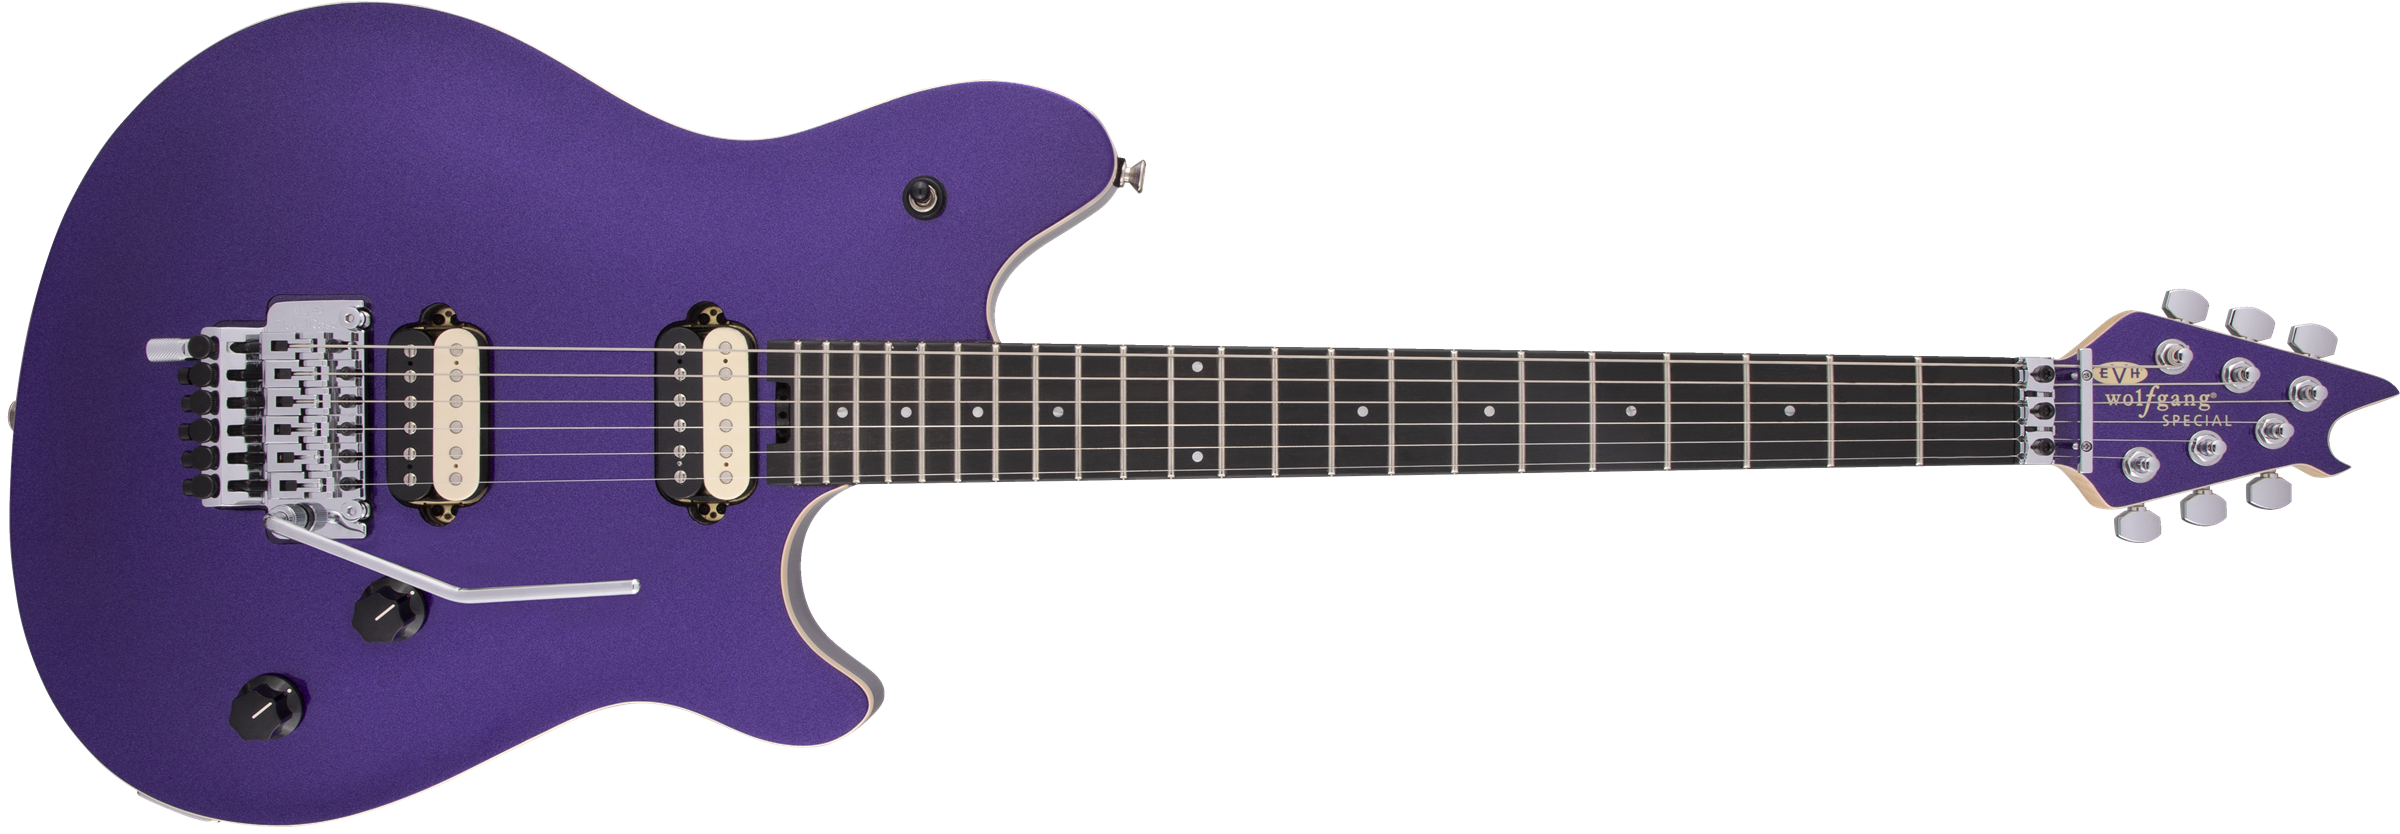 EVH Wolfgang Special Ebony Fingerboard Deep Purple Metallic 5107701552 SERIAL NUMBER WG222192M - 7.2 LBS